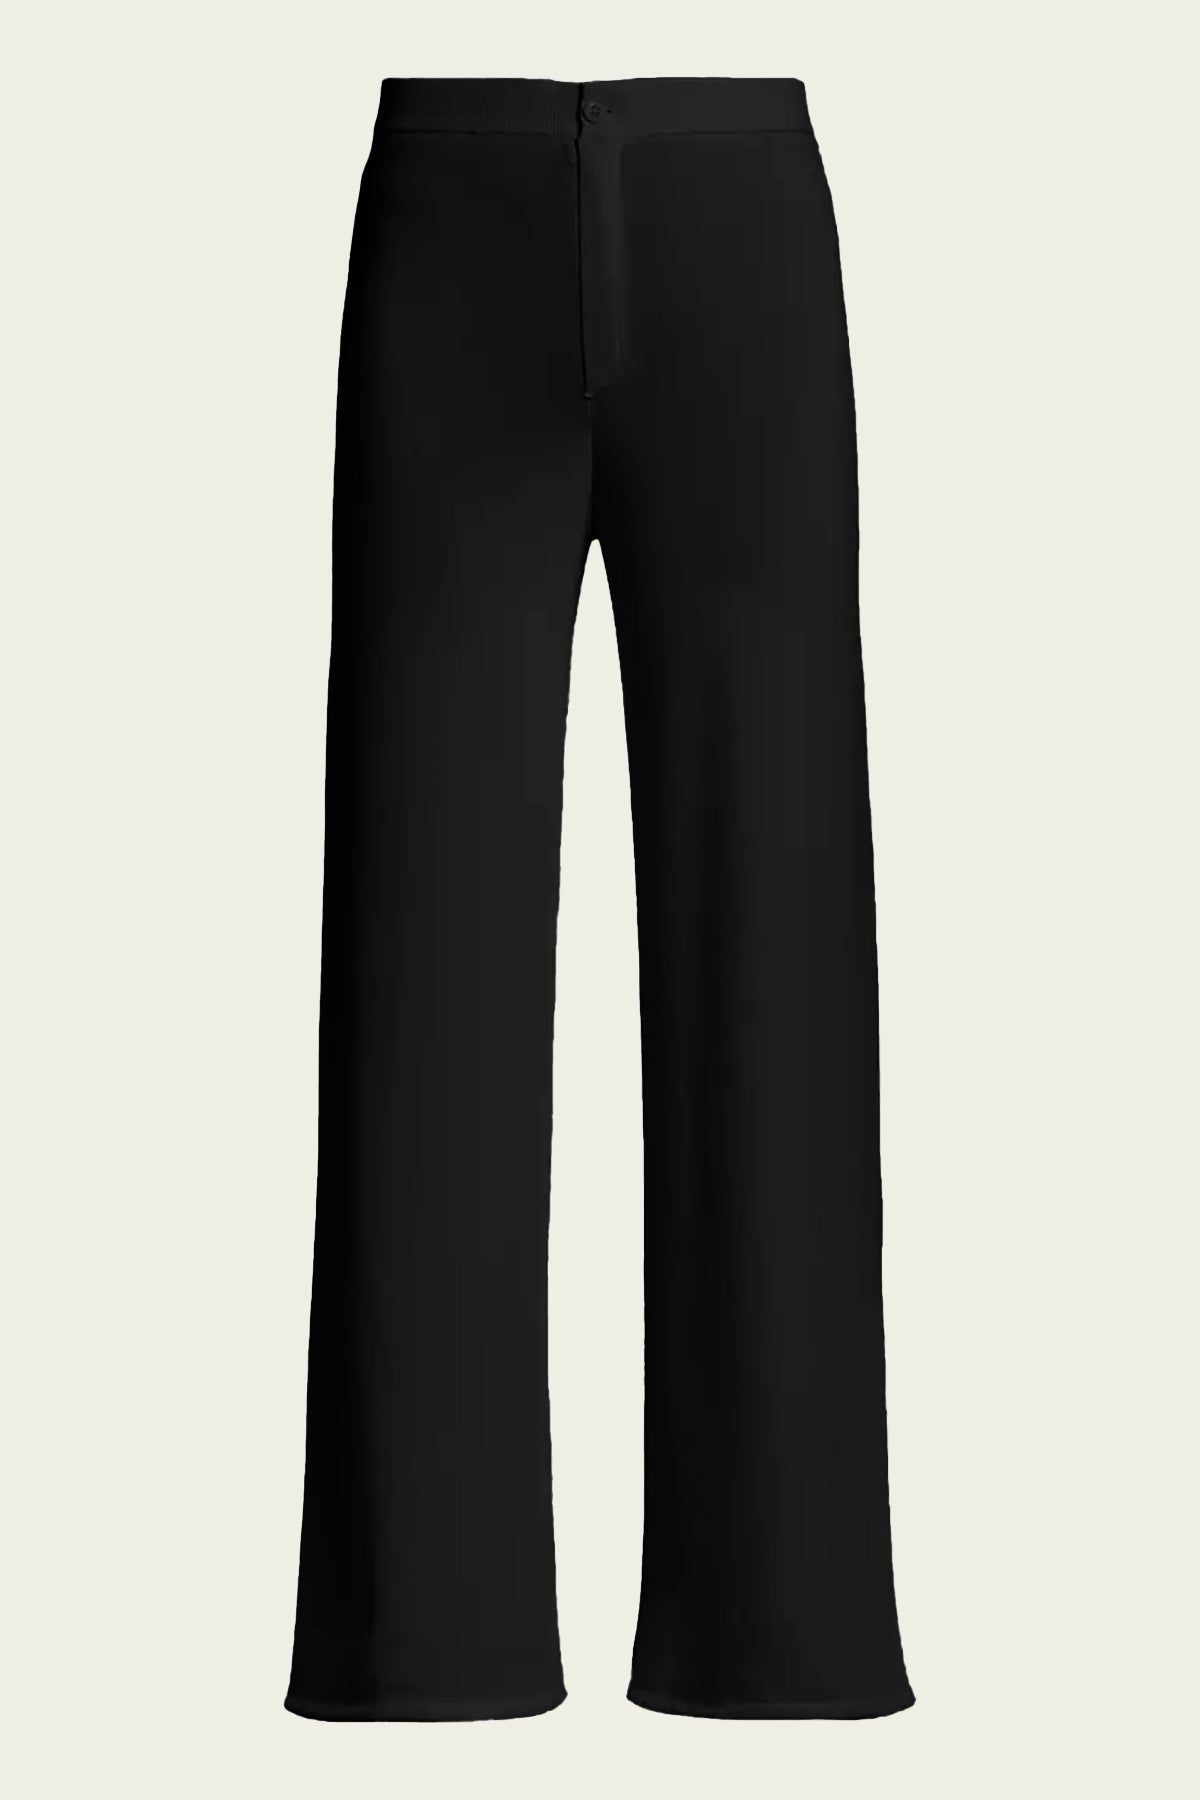 Jabber Knit Pant in Black - shop-olivia.com